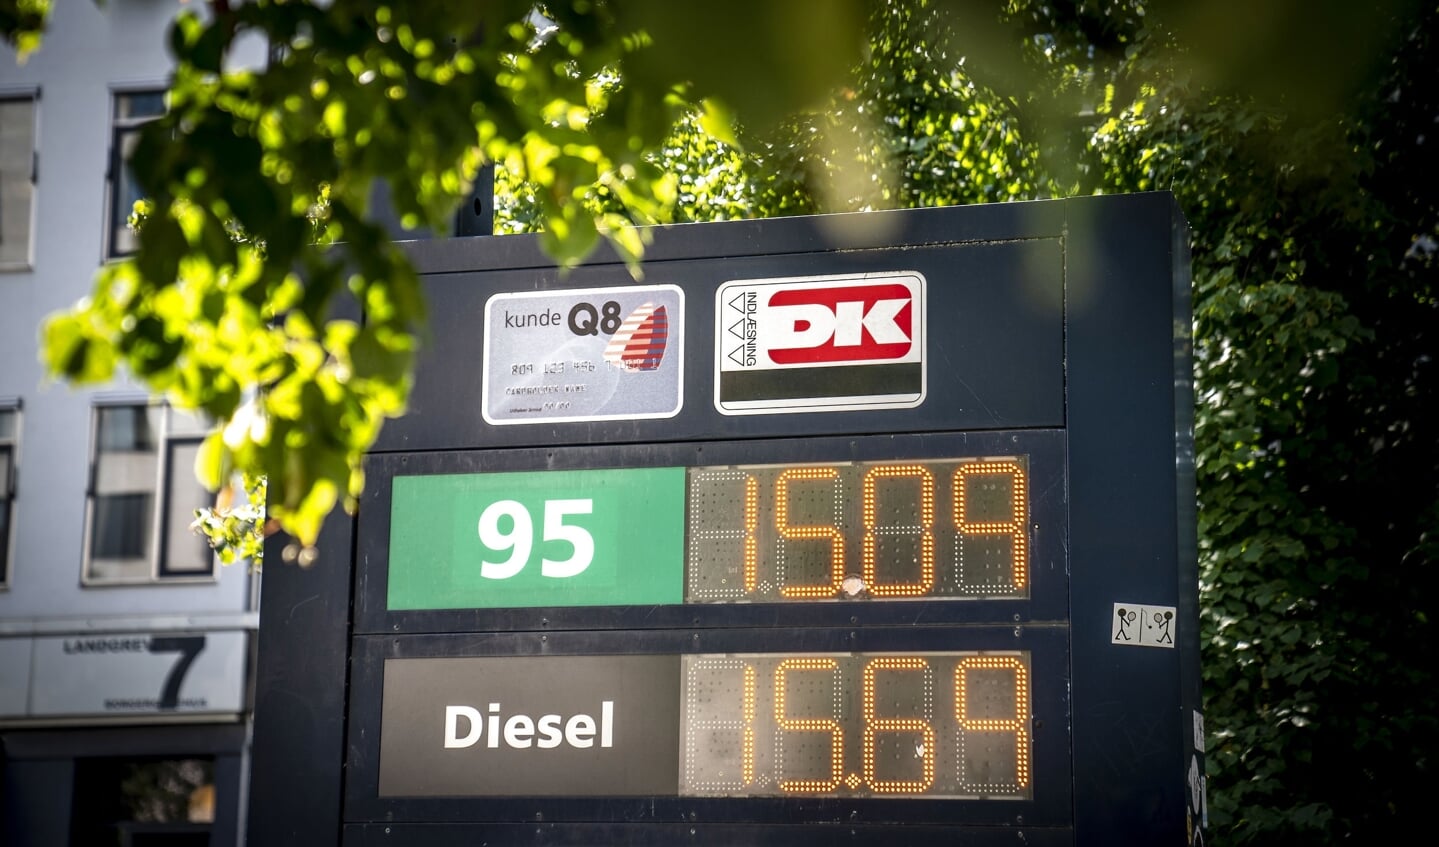 Priserne på brændstof til bilen har længe været høje. Politiet har set en markant stigning i antallet af anmeldelser af benzintyveri. (Arkivfoto).